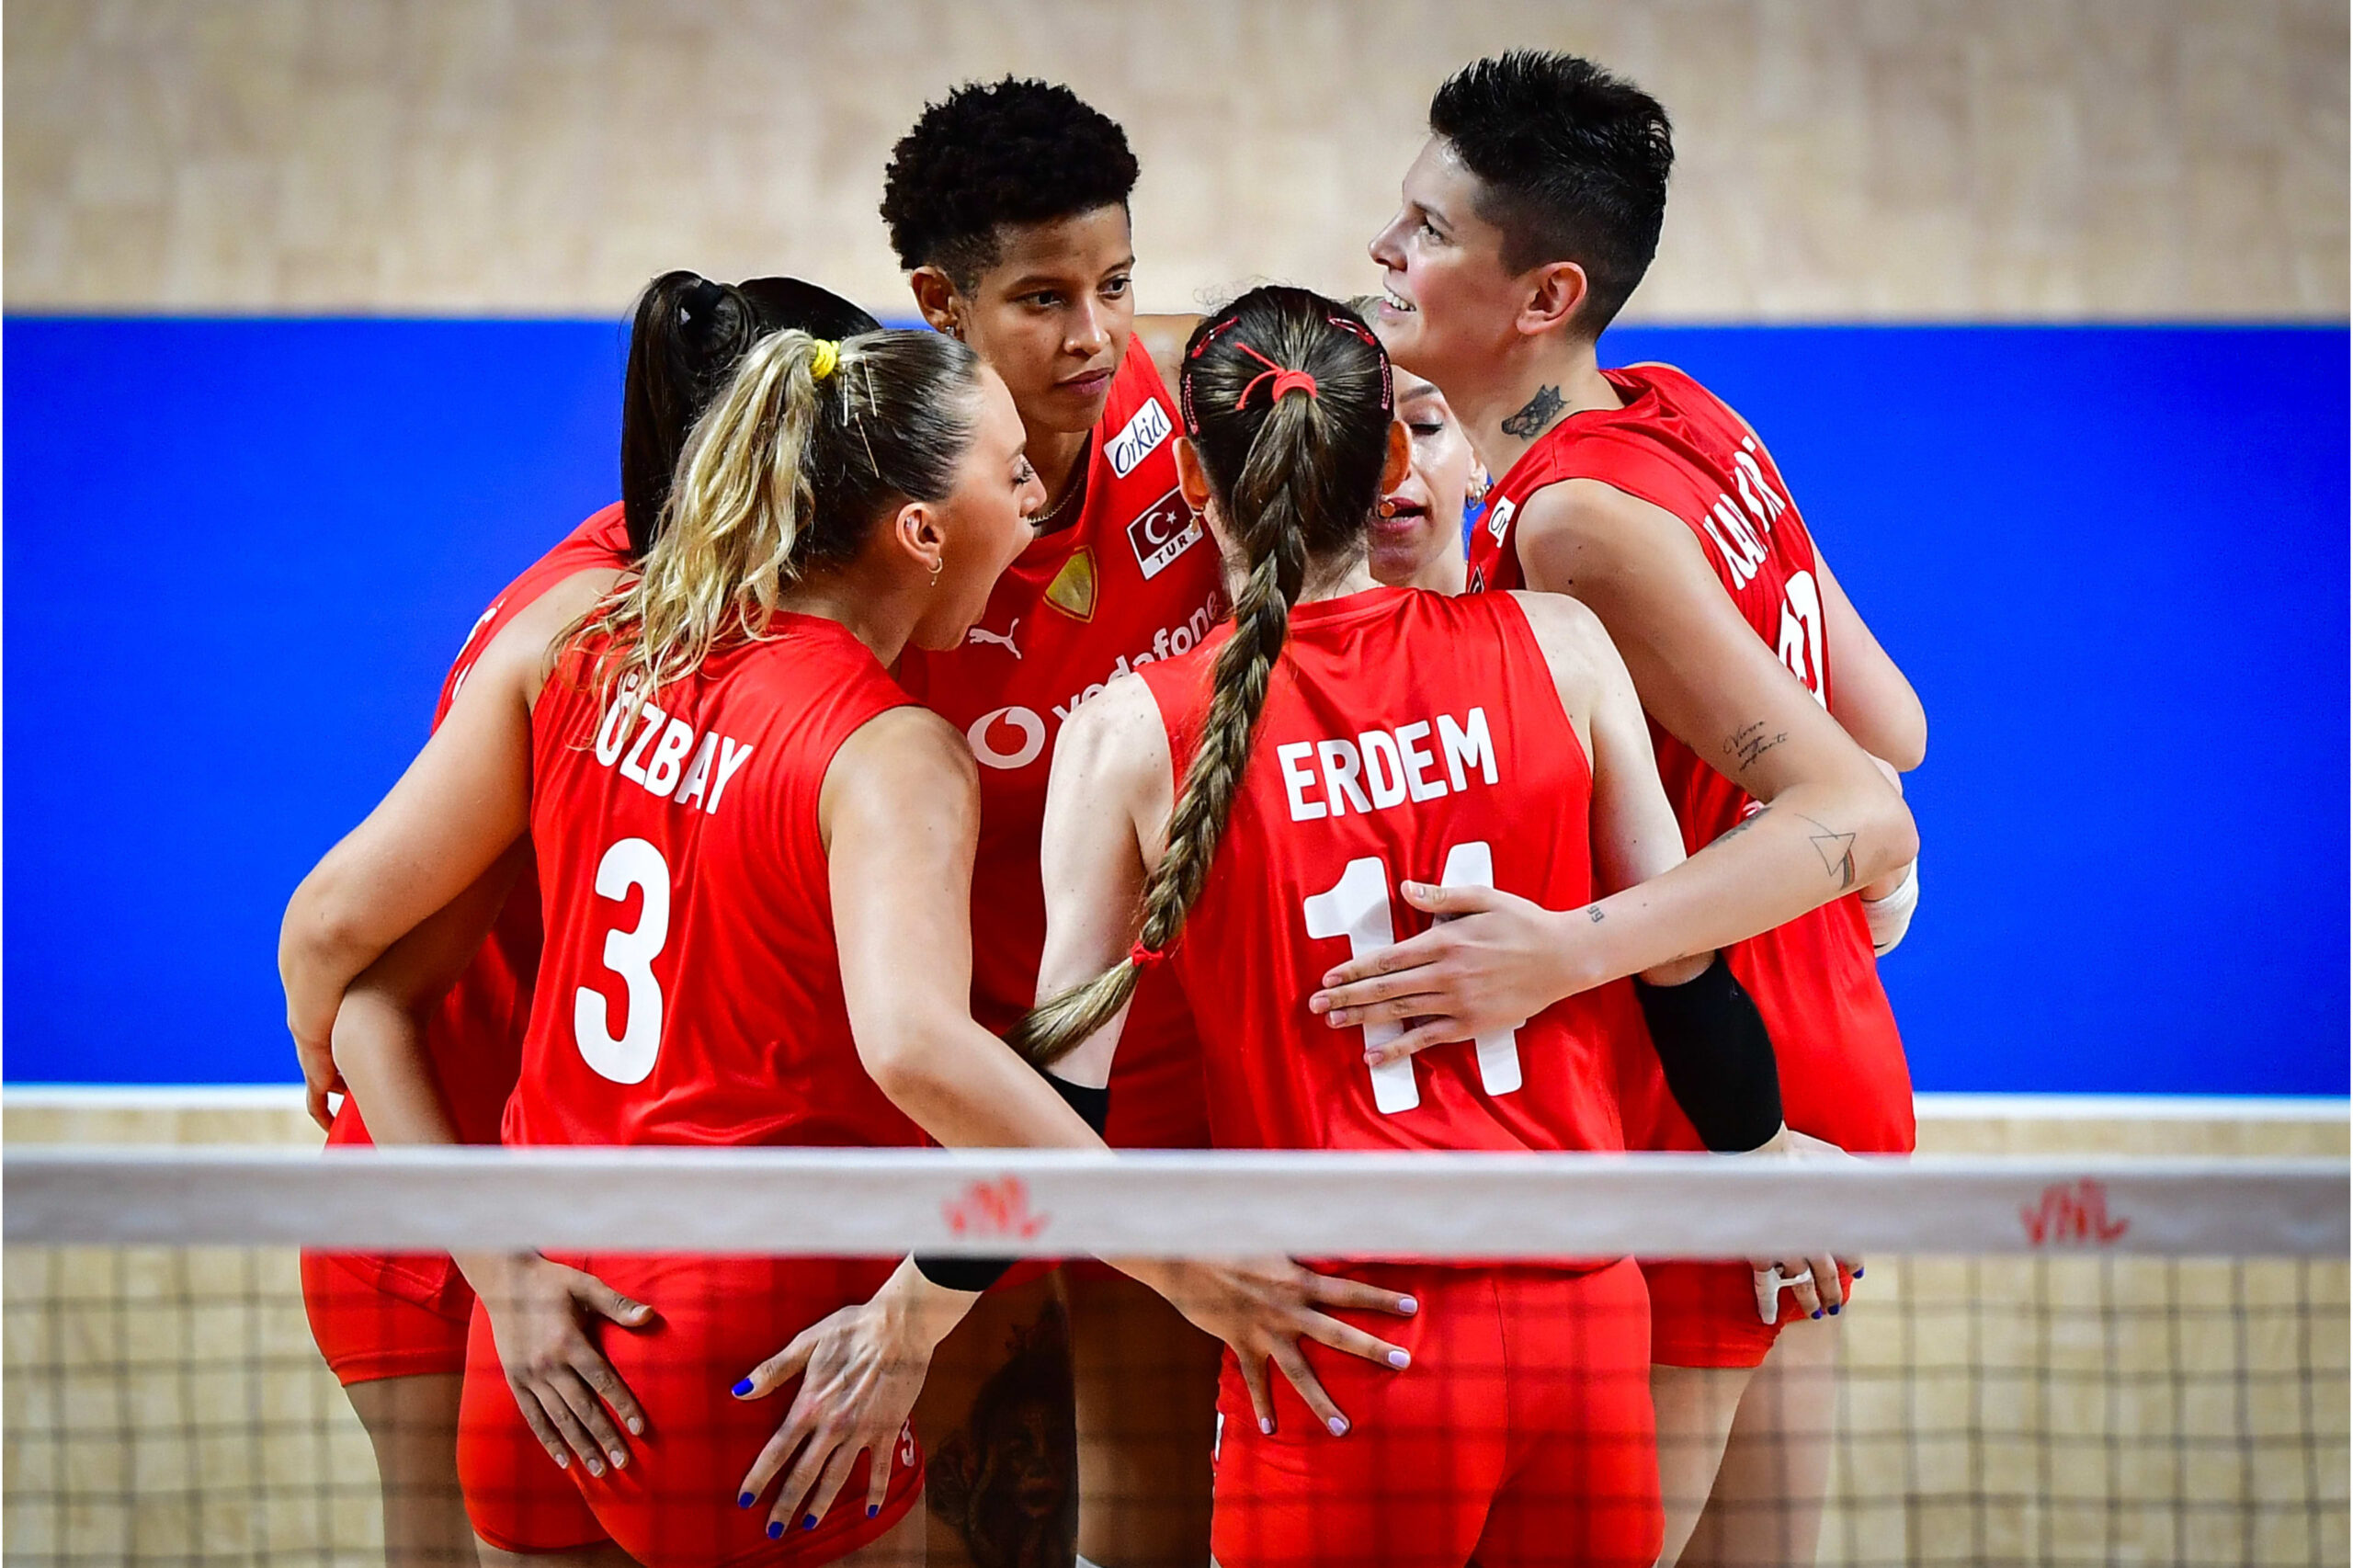 Volley femminile, Olimpiadi Parigi 2024: le favorite. USA, Turchia e Serbia ambiziose, l’Italia può inserirsi